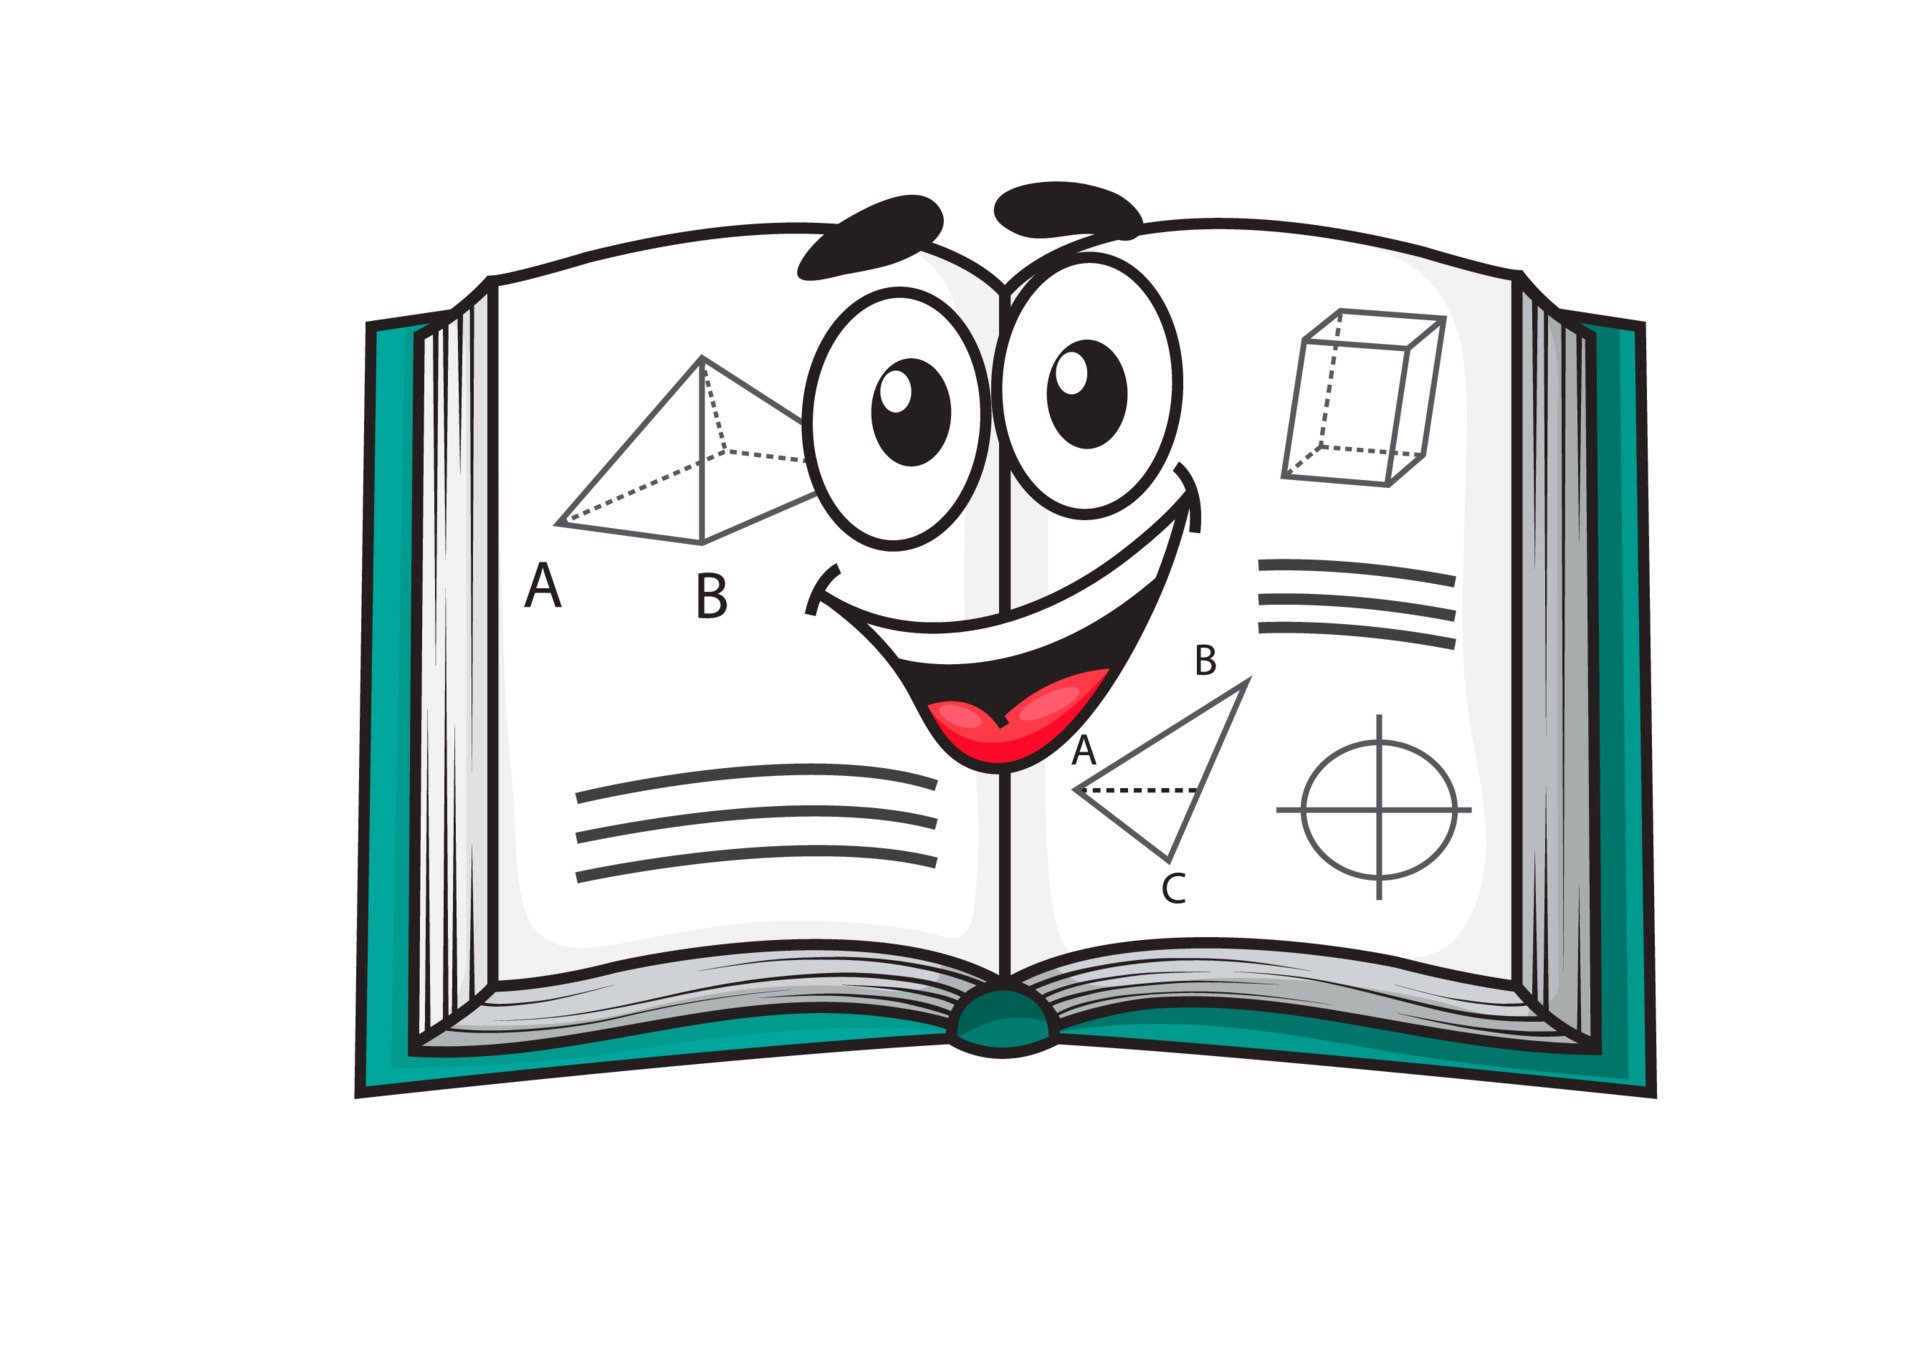 Рисунок книги математики. Книжки и тетрадки мультяшные. Рисунок открытой книги для детей. Тетрадь мультяшная.